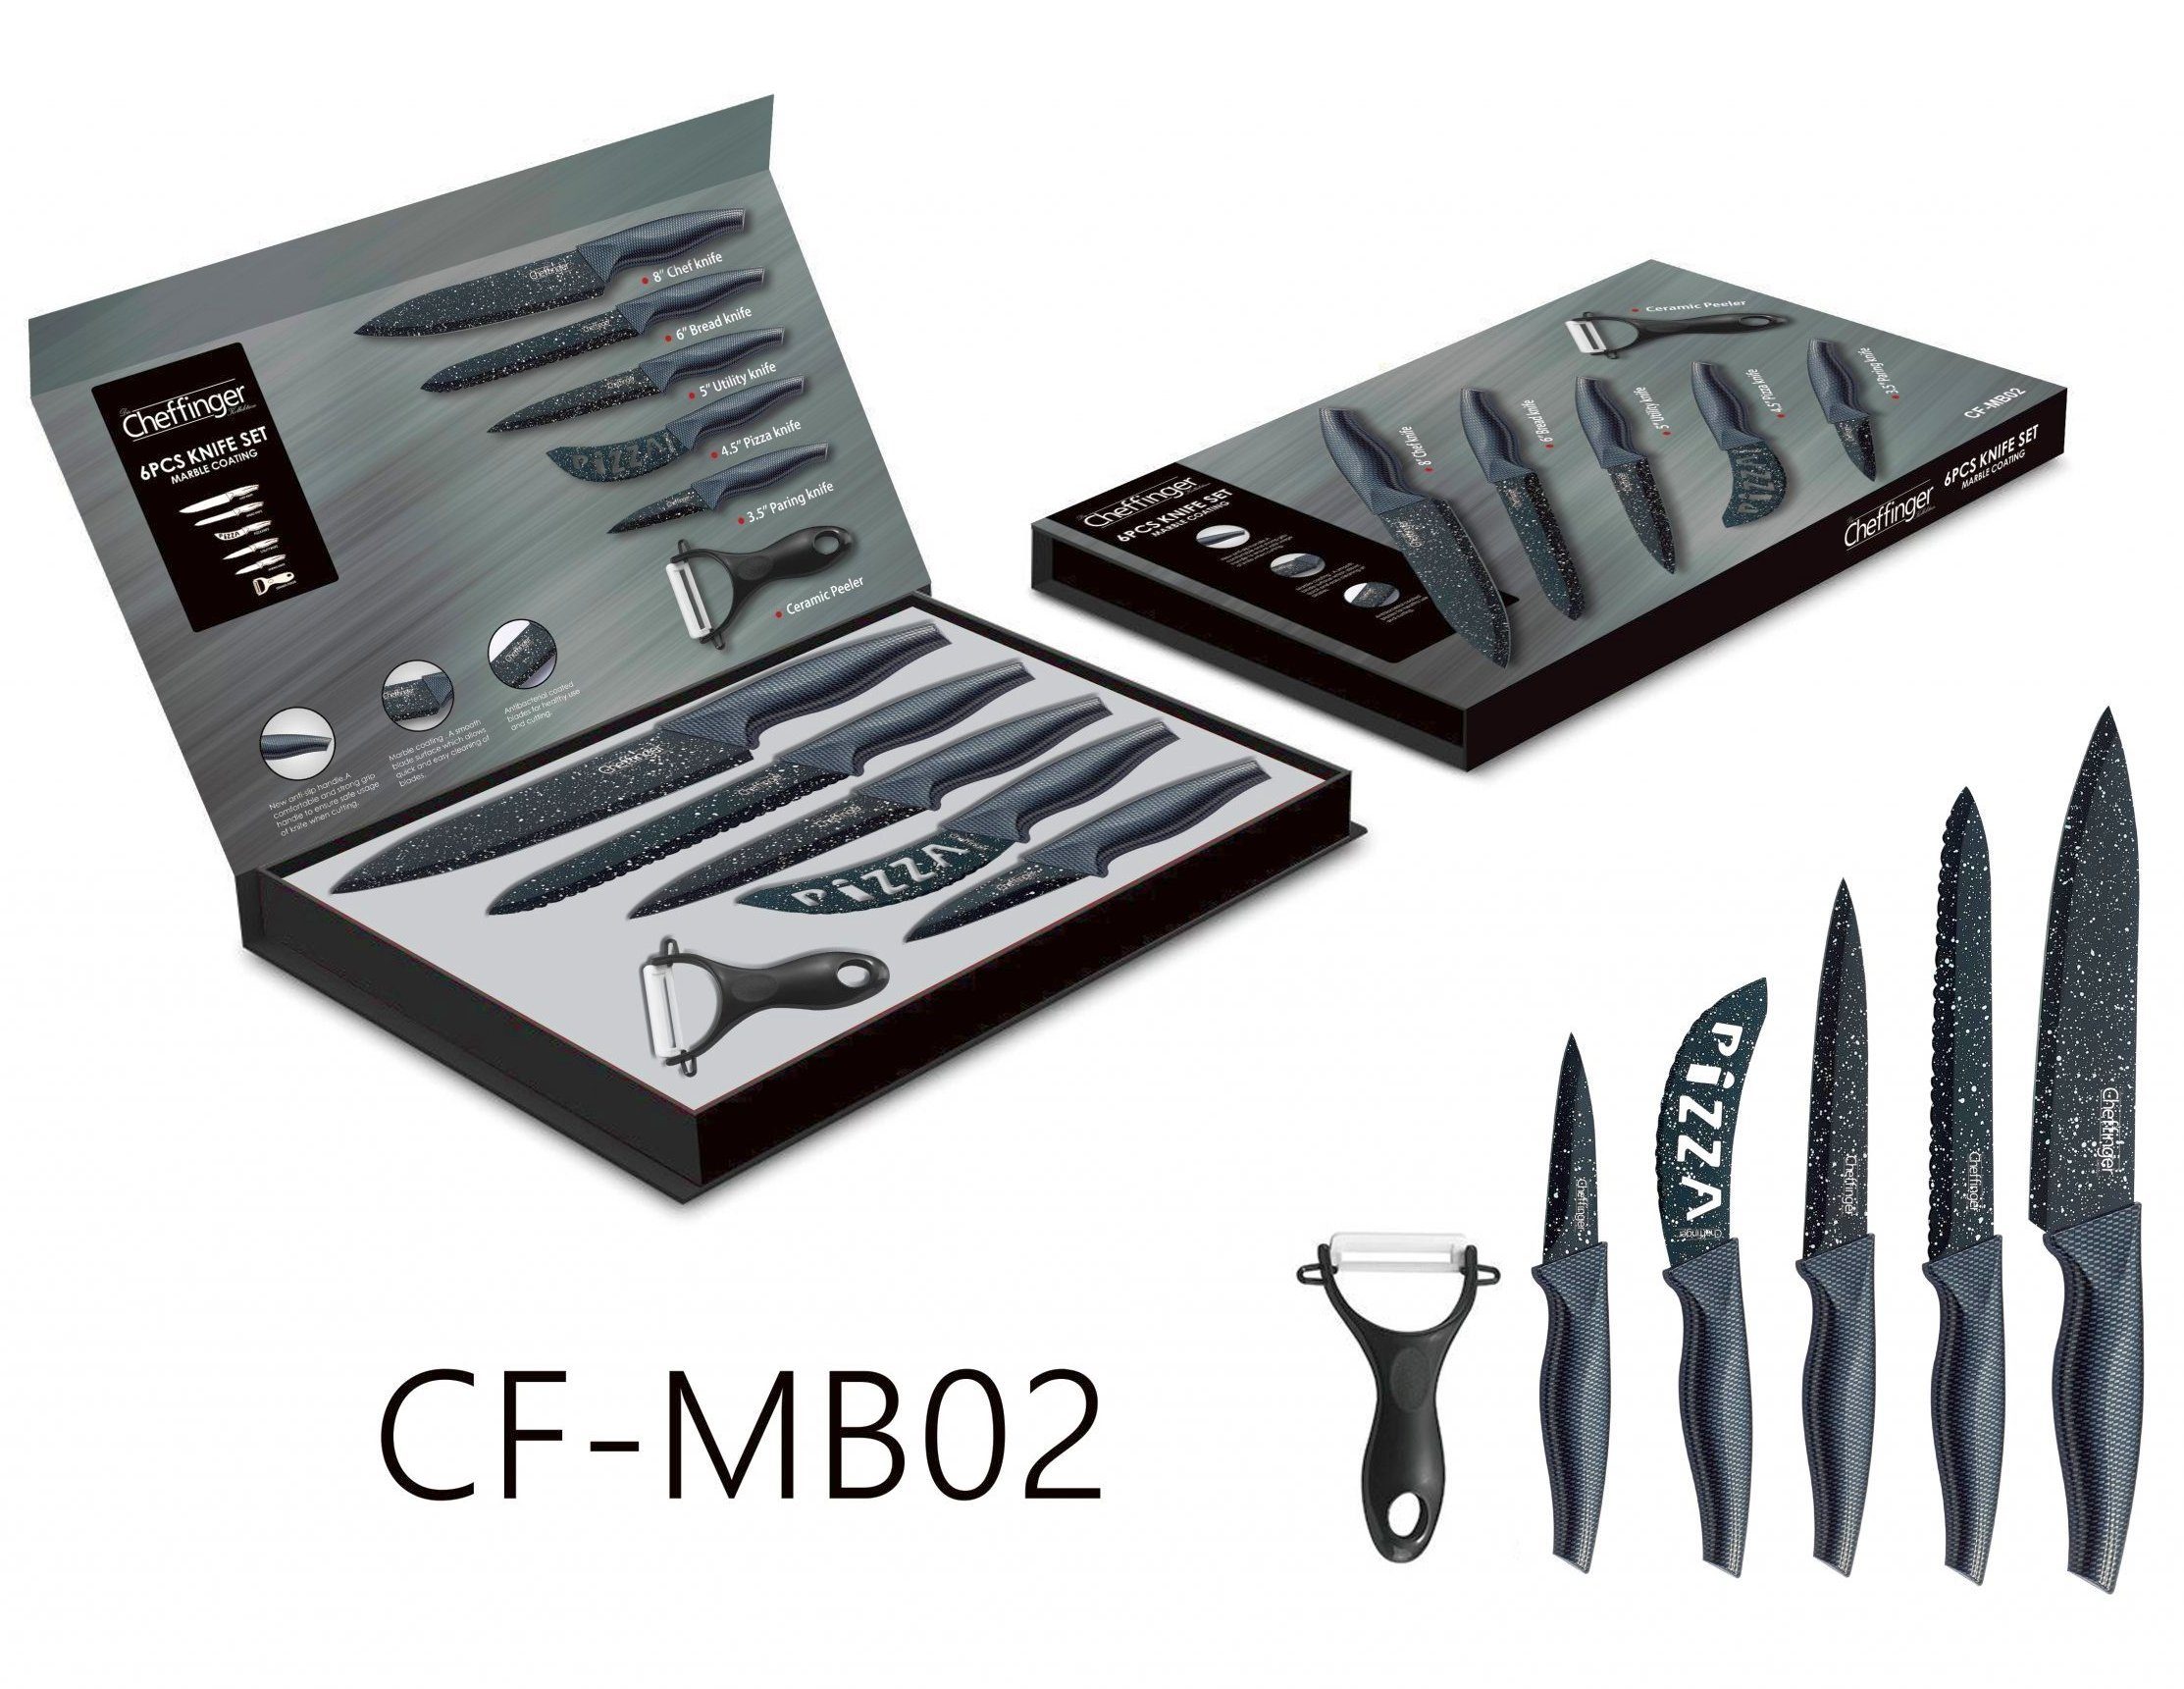 Cheffinger Messer-Set Messer Kochmesser Sparschäler Messerset 6-tlg. Cheffinger CF-MB02